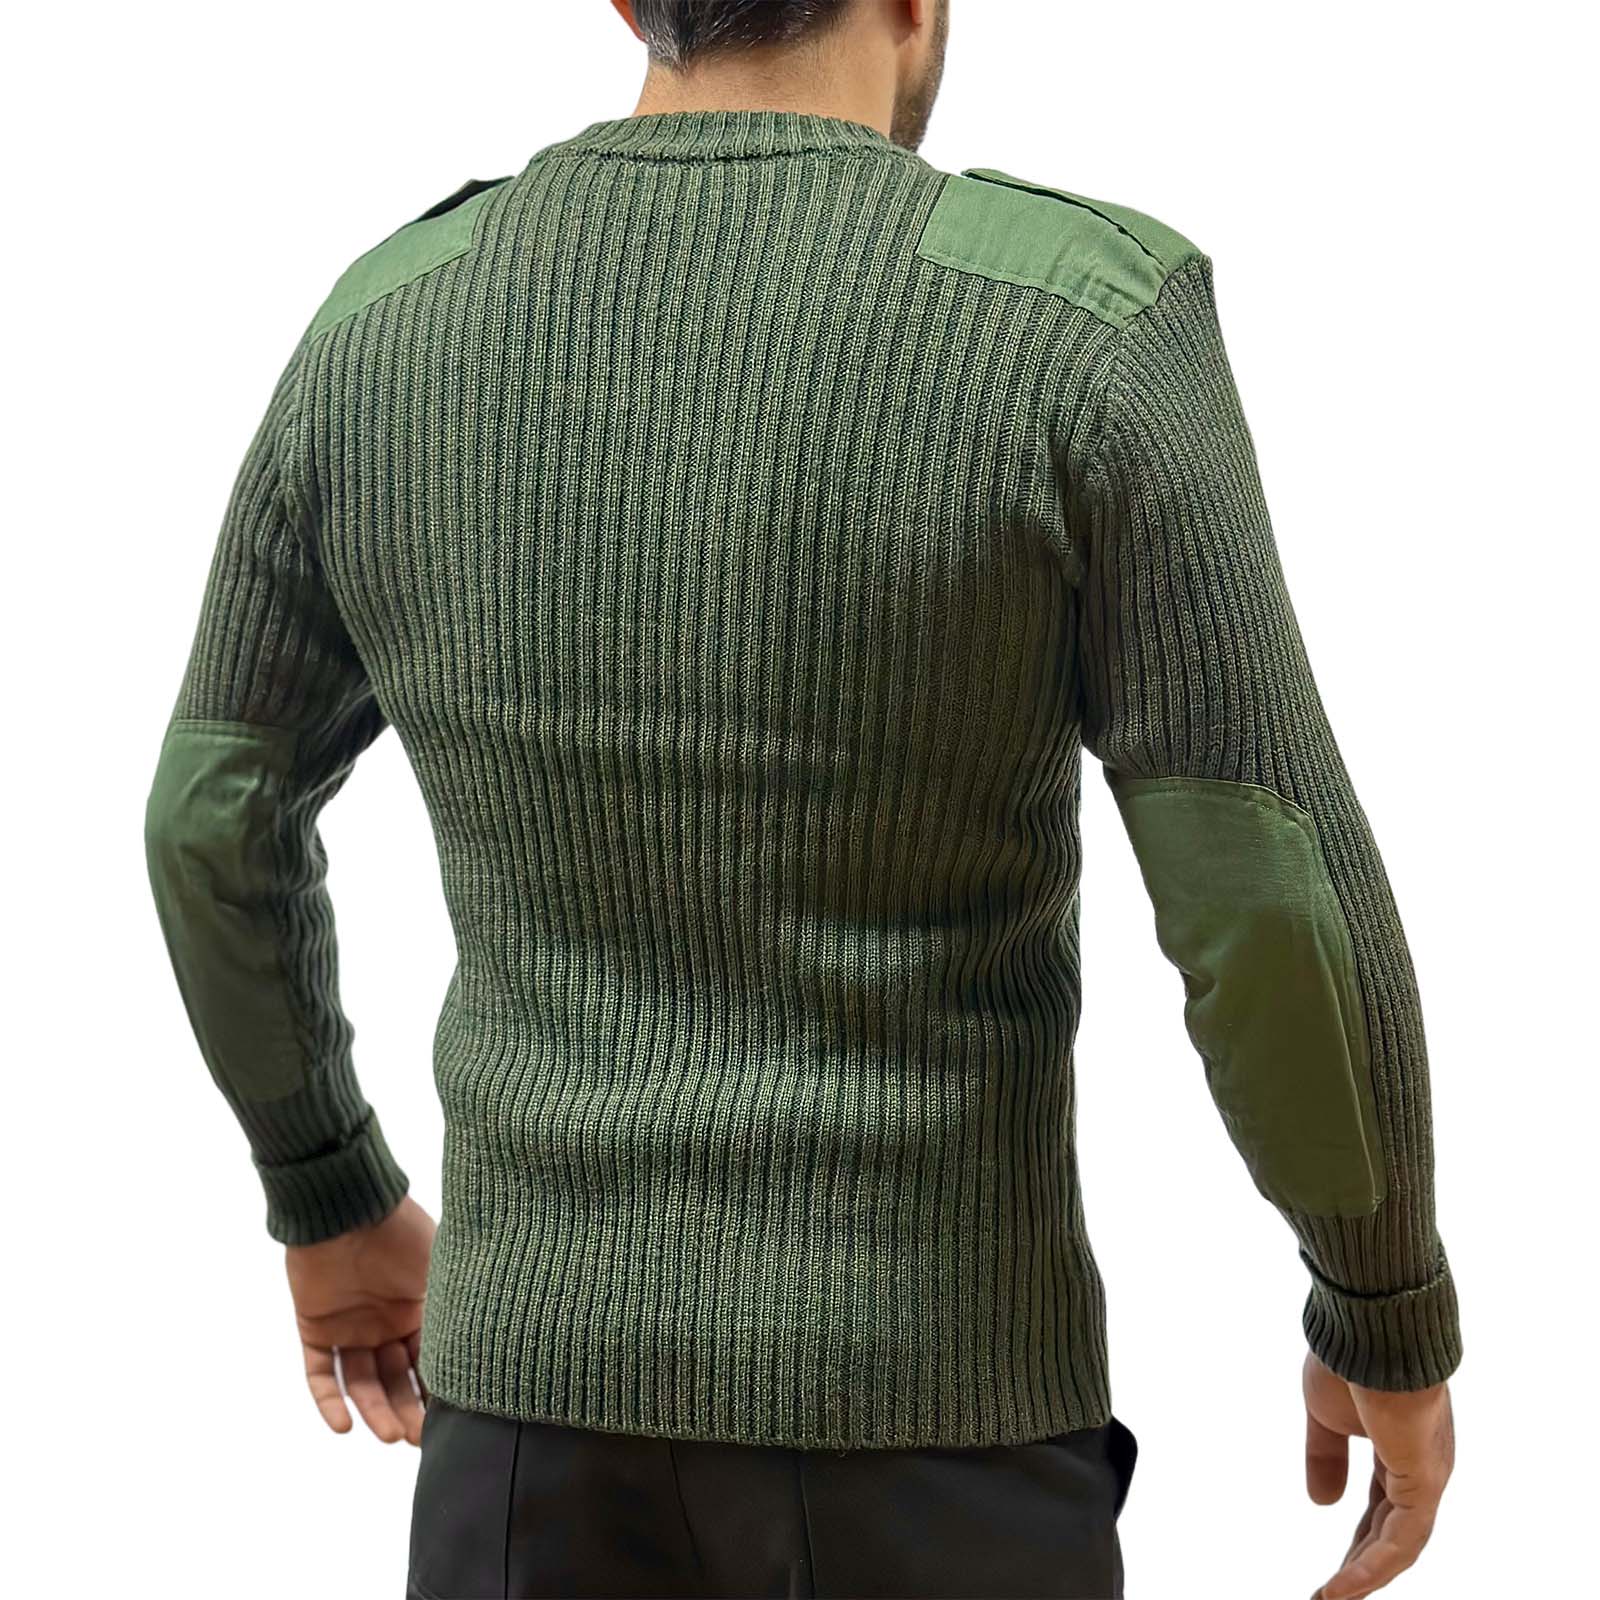 Армейский свитер вязанный оливковый